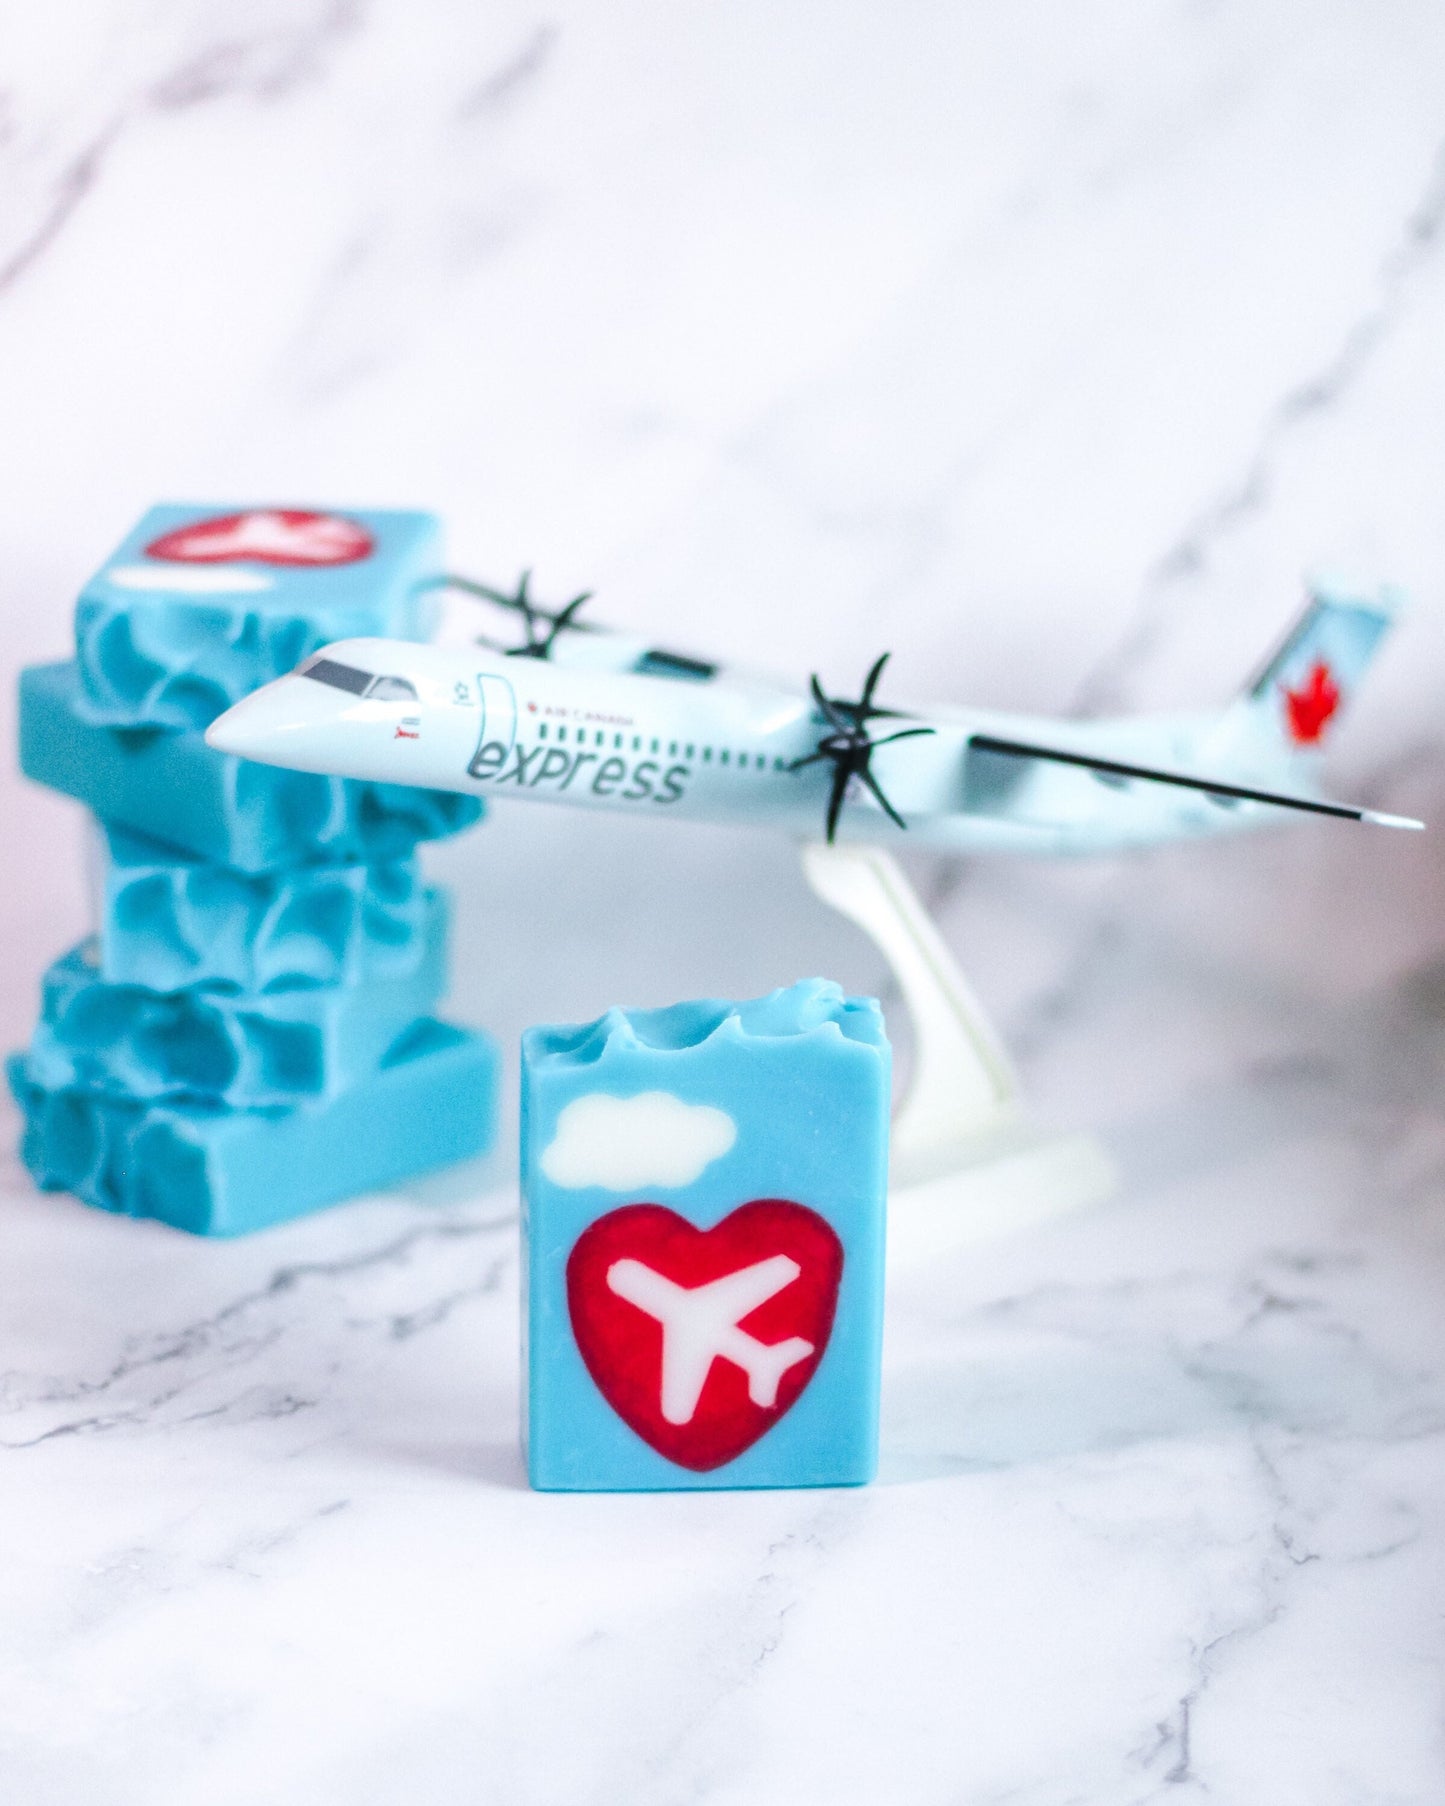 Wanderlust Handmade Vegan Soap | Musky Winter Scent | Holiday Aviation Plane Stocking Stuffer Christmas Gift for Travel Lover Pilot or FA